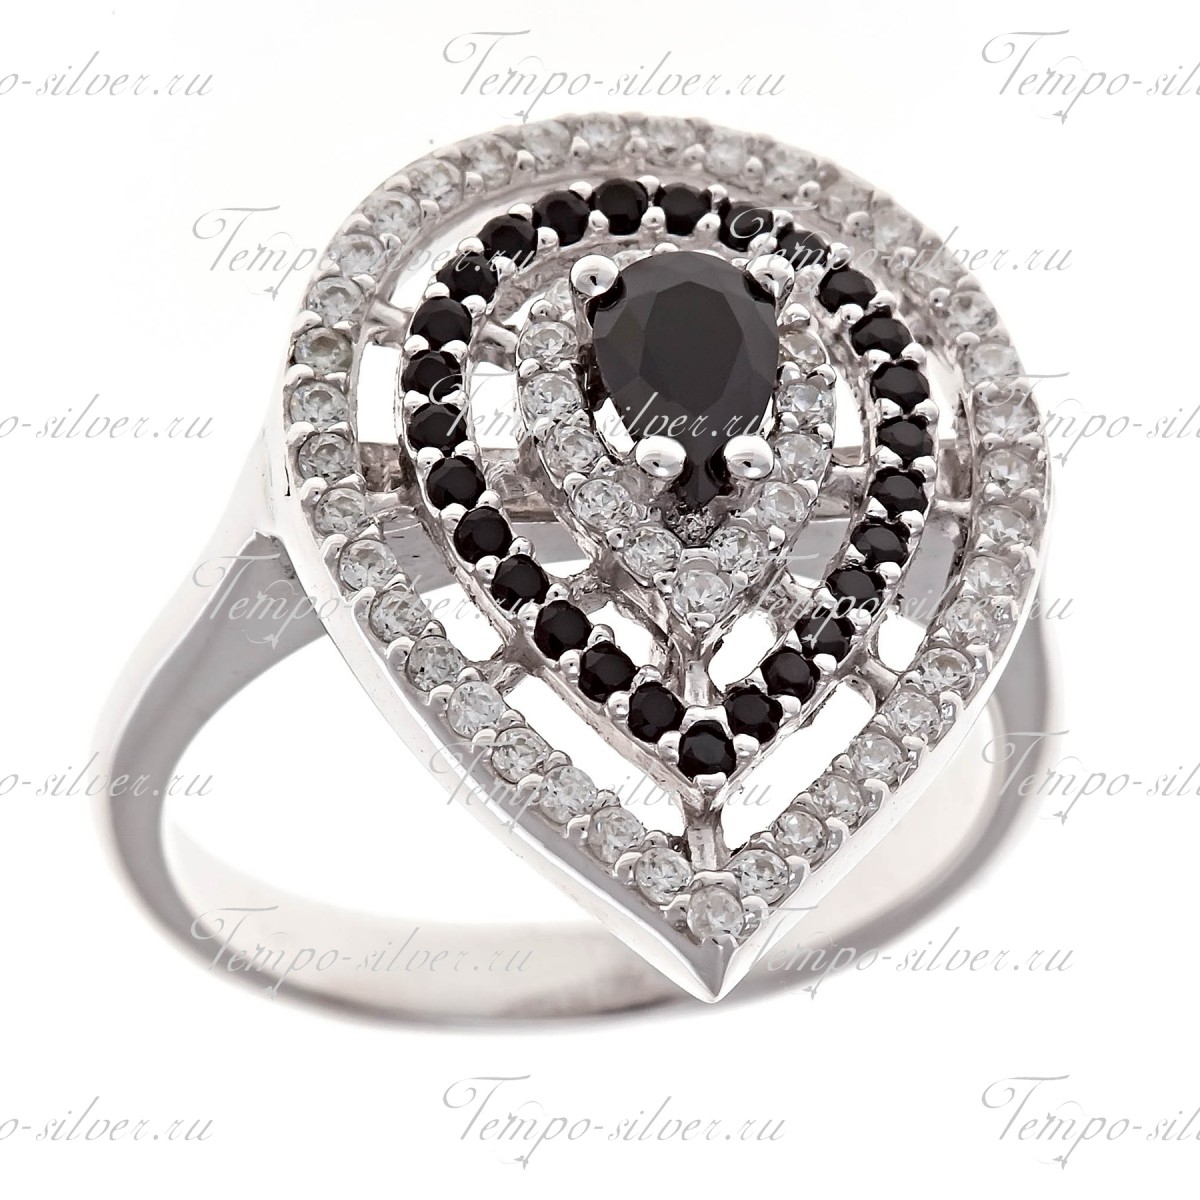 Кольцо серебряное в форме капли 3-х рядное с черными камнями цена